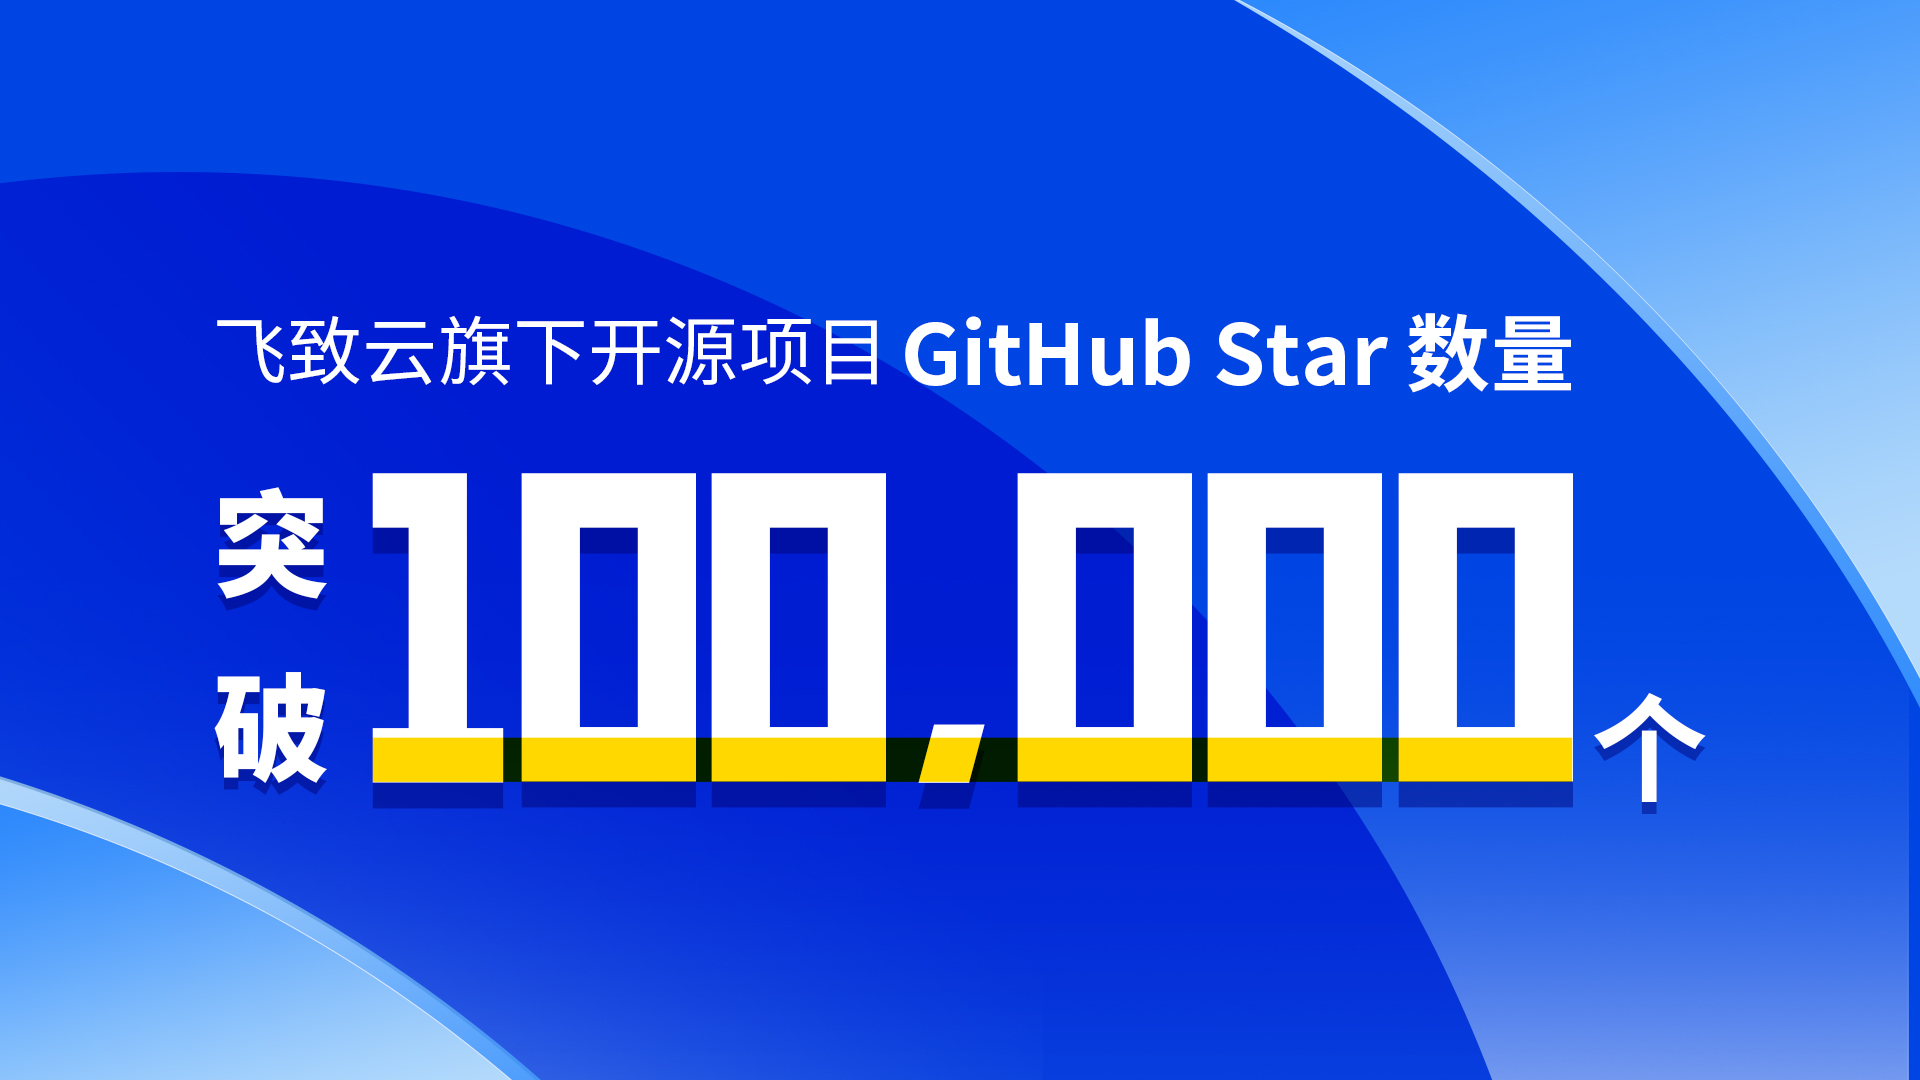 【微信头图】飞致云旗下开源项目GitHub-Star数量突破100,000个.jpg